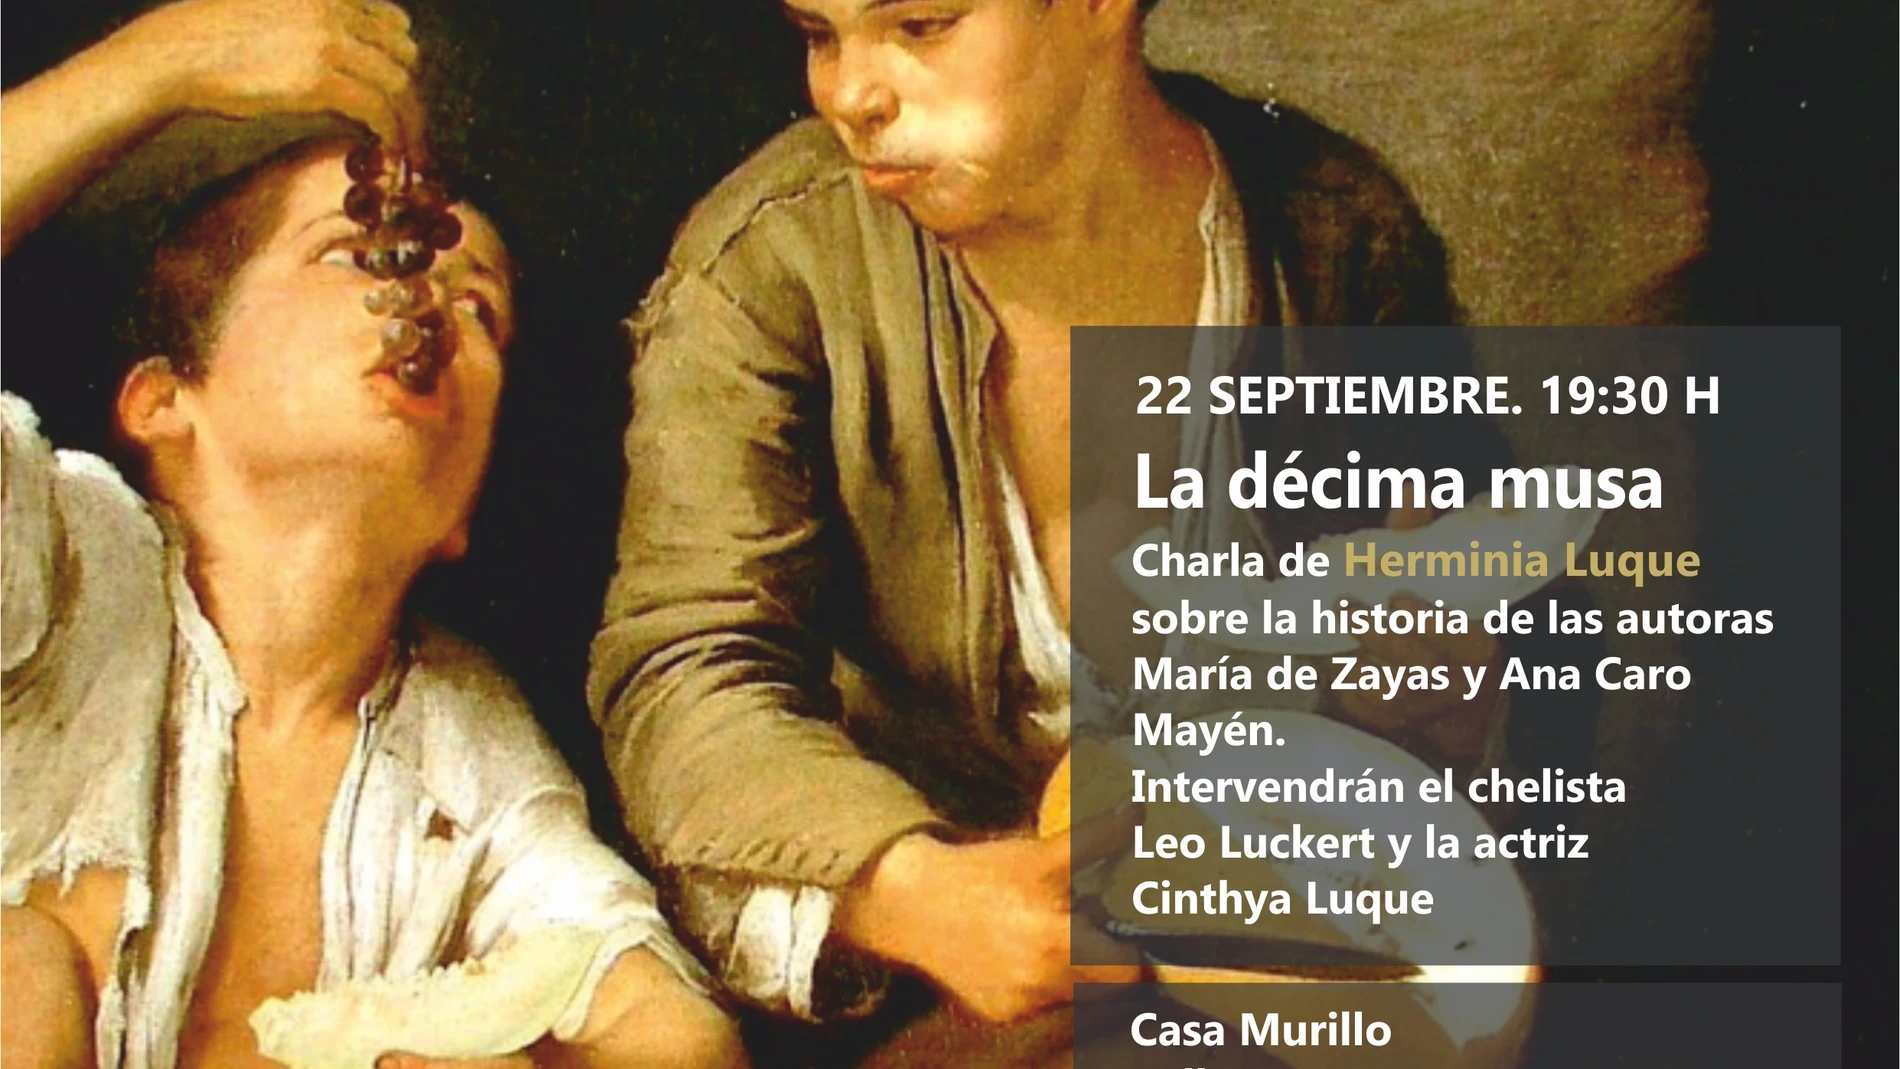 Cartel anunciador de la conferencia "La décima musa" con Herminia Luque